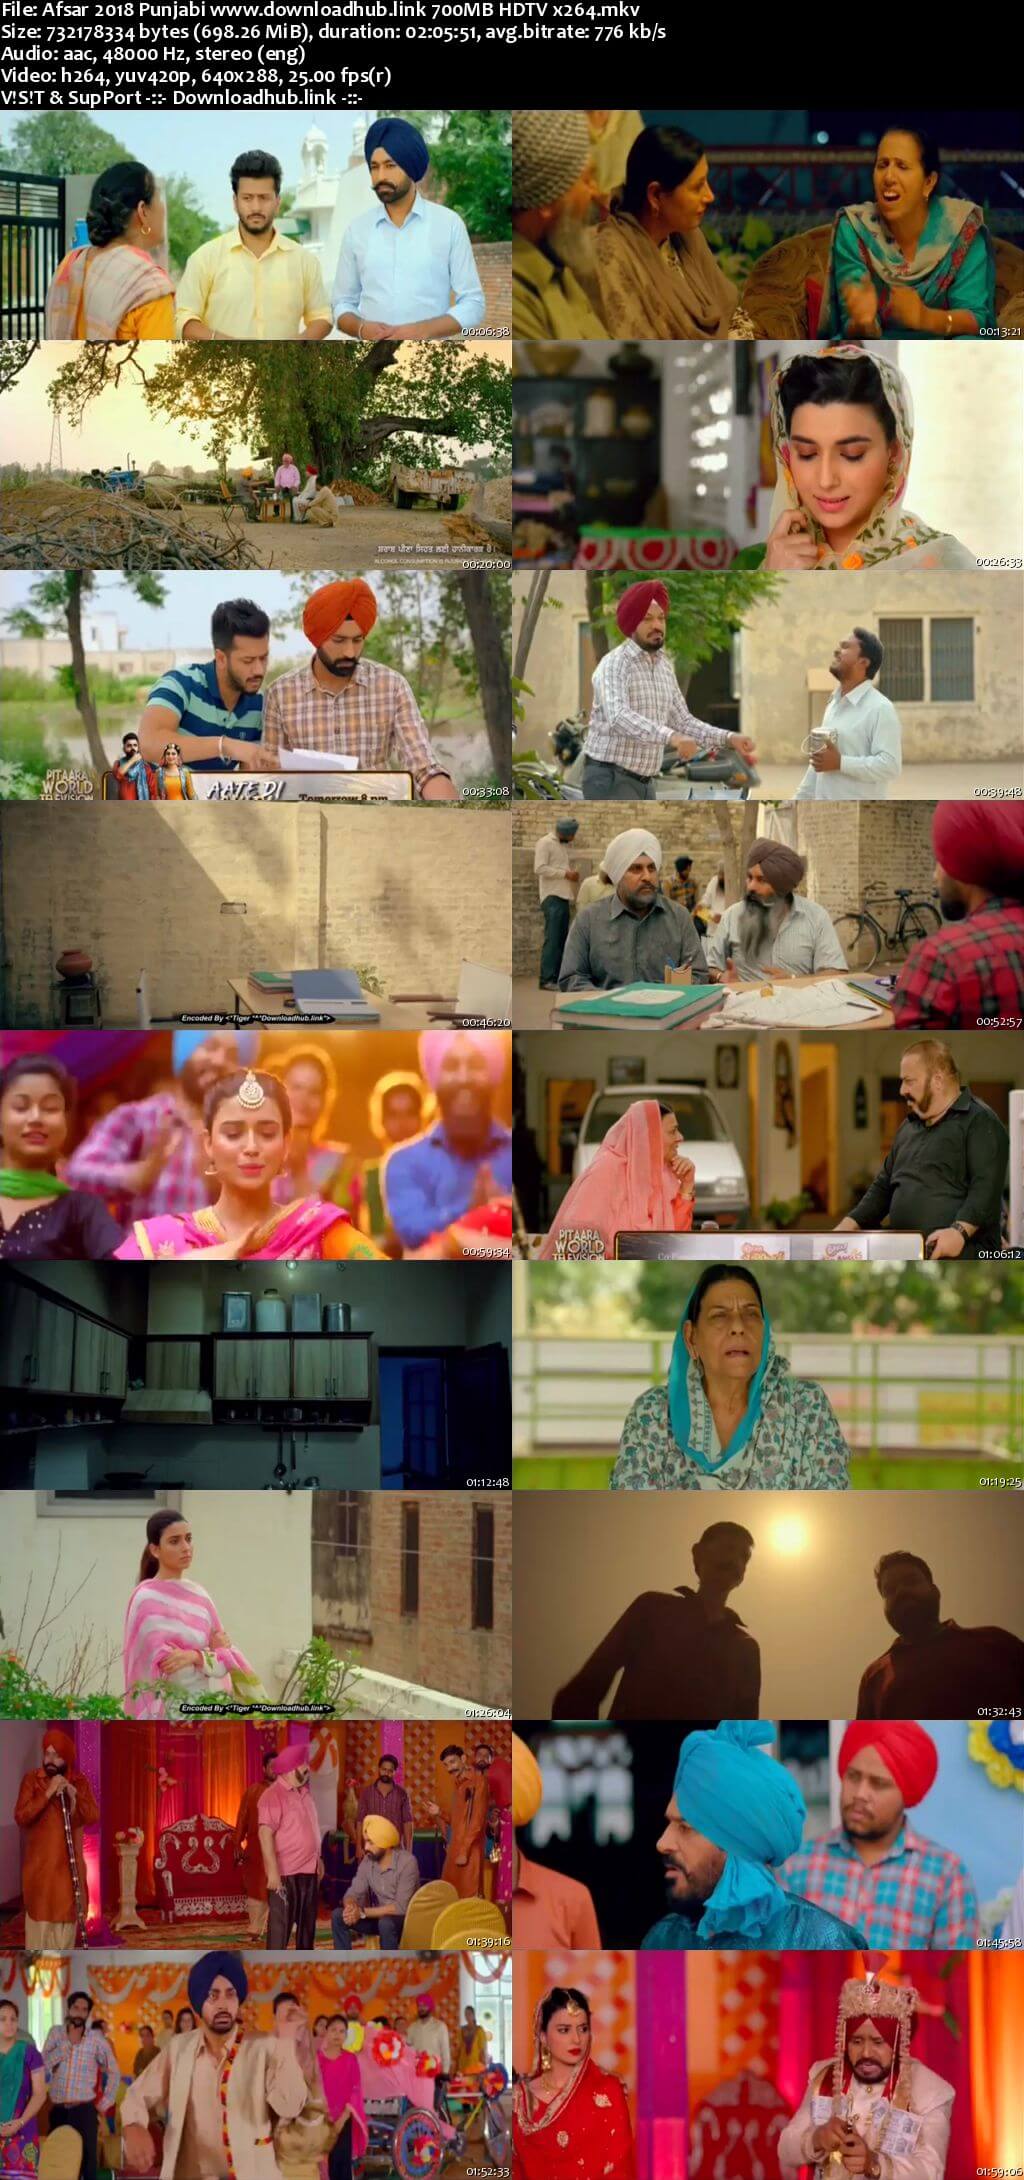 Afsar 2018 Punjabi 700MB HDTV x264